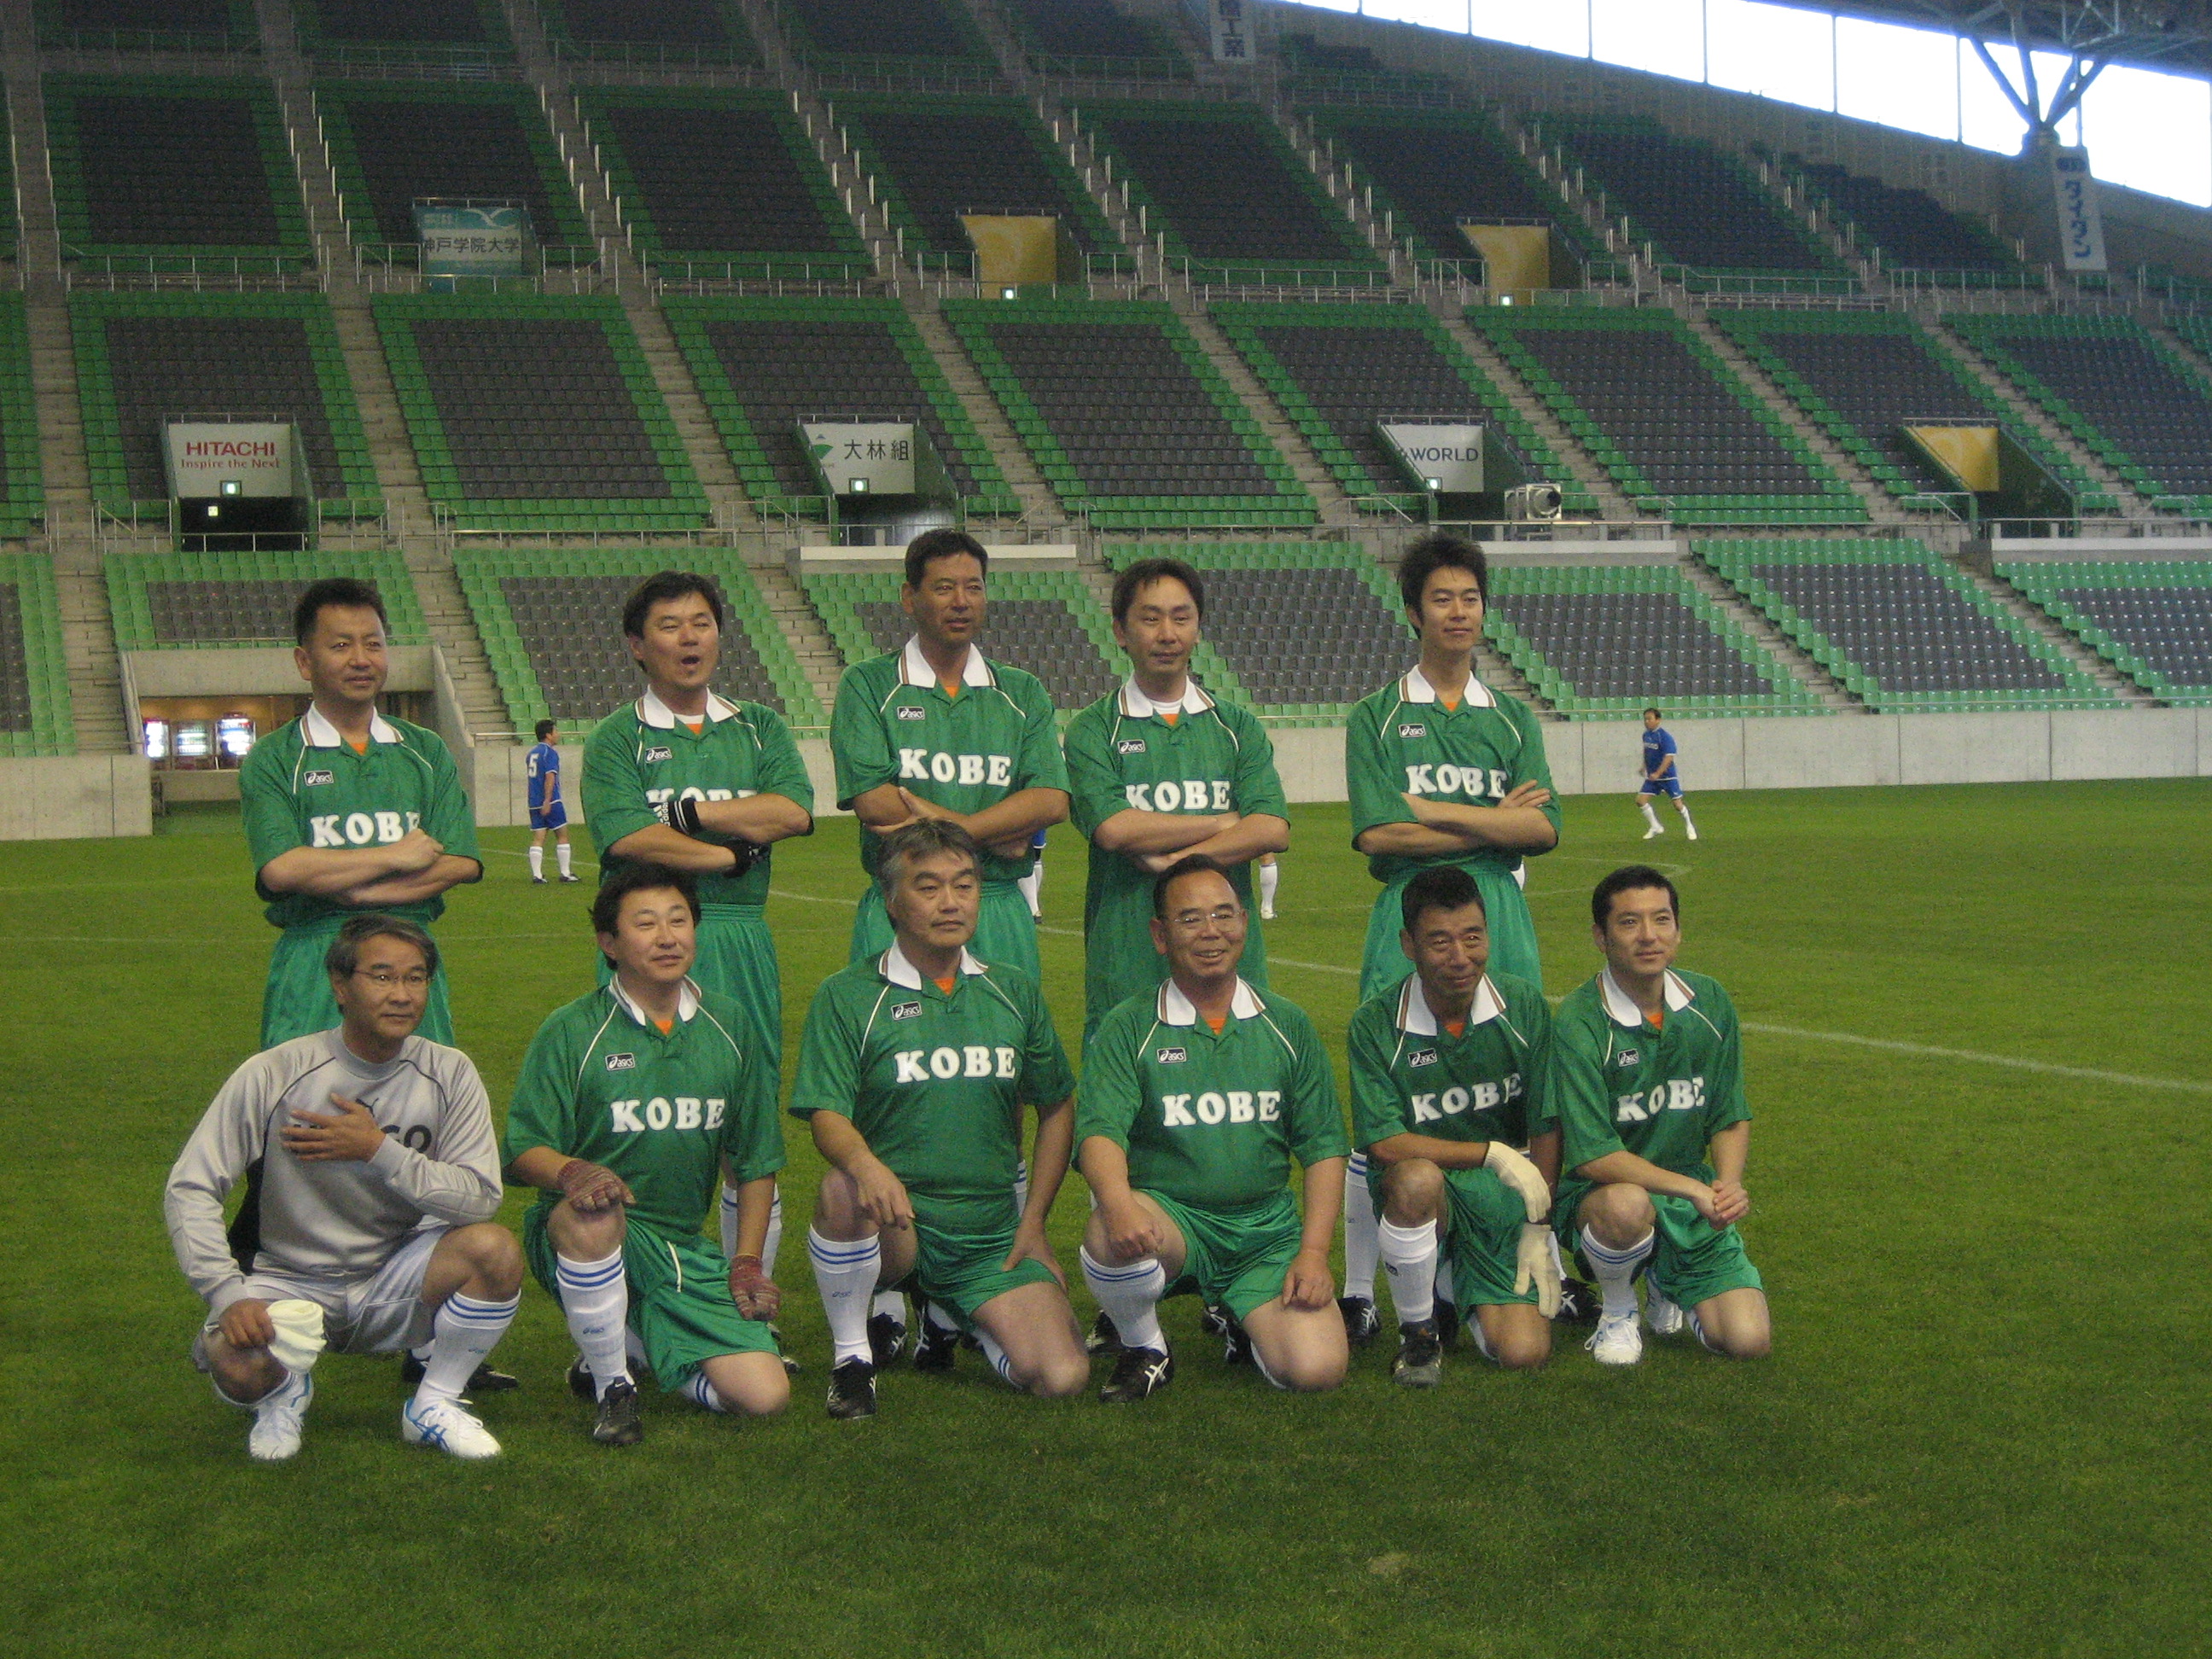 サッカー親善試合 神戸市会対兵庫県会 神戸市会議員 坊やすなが